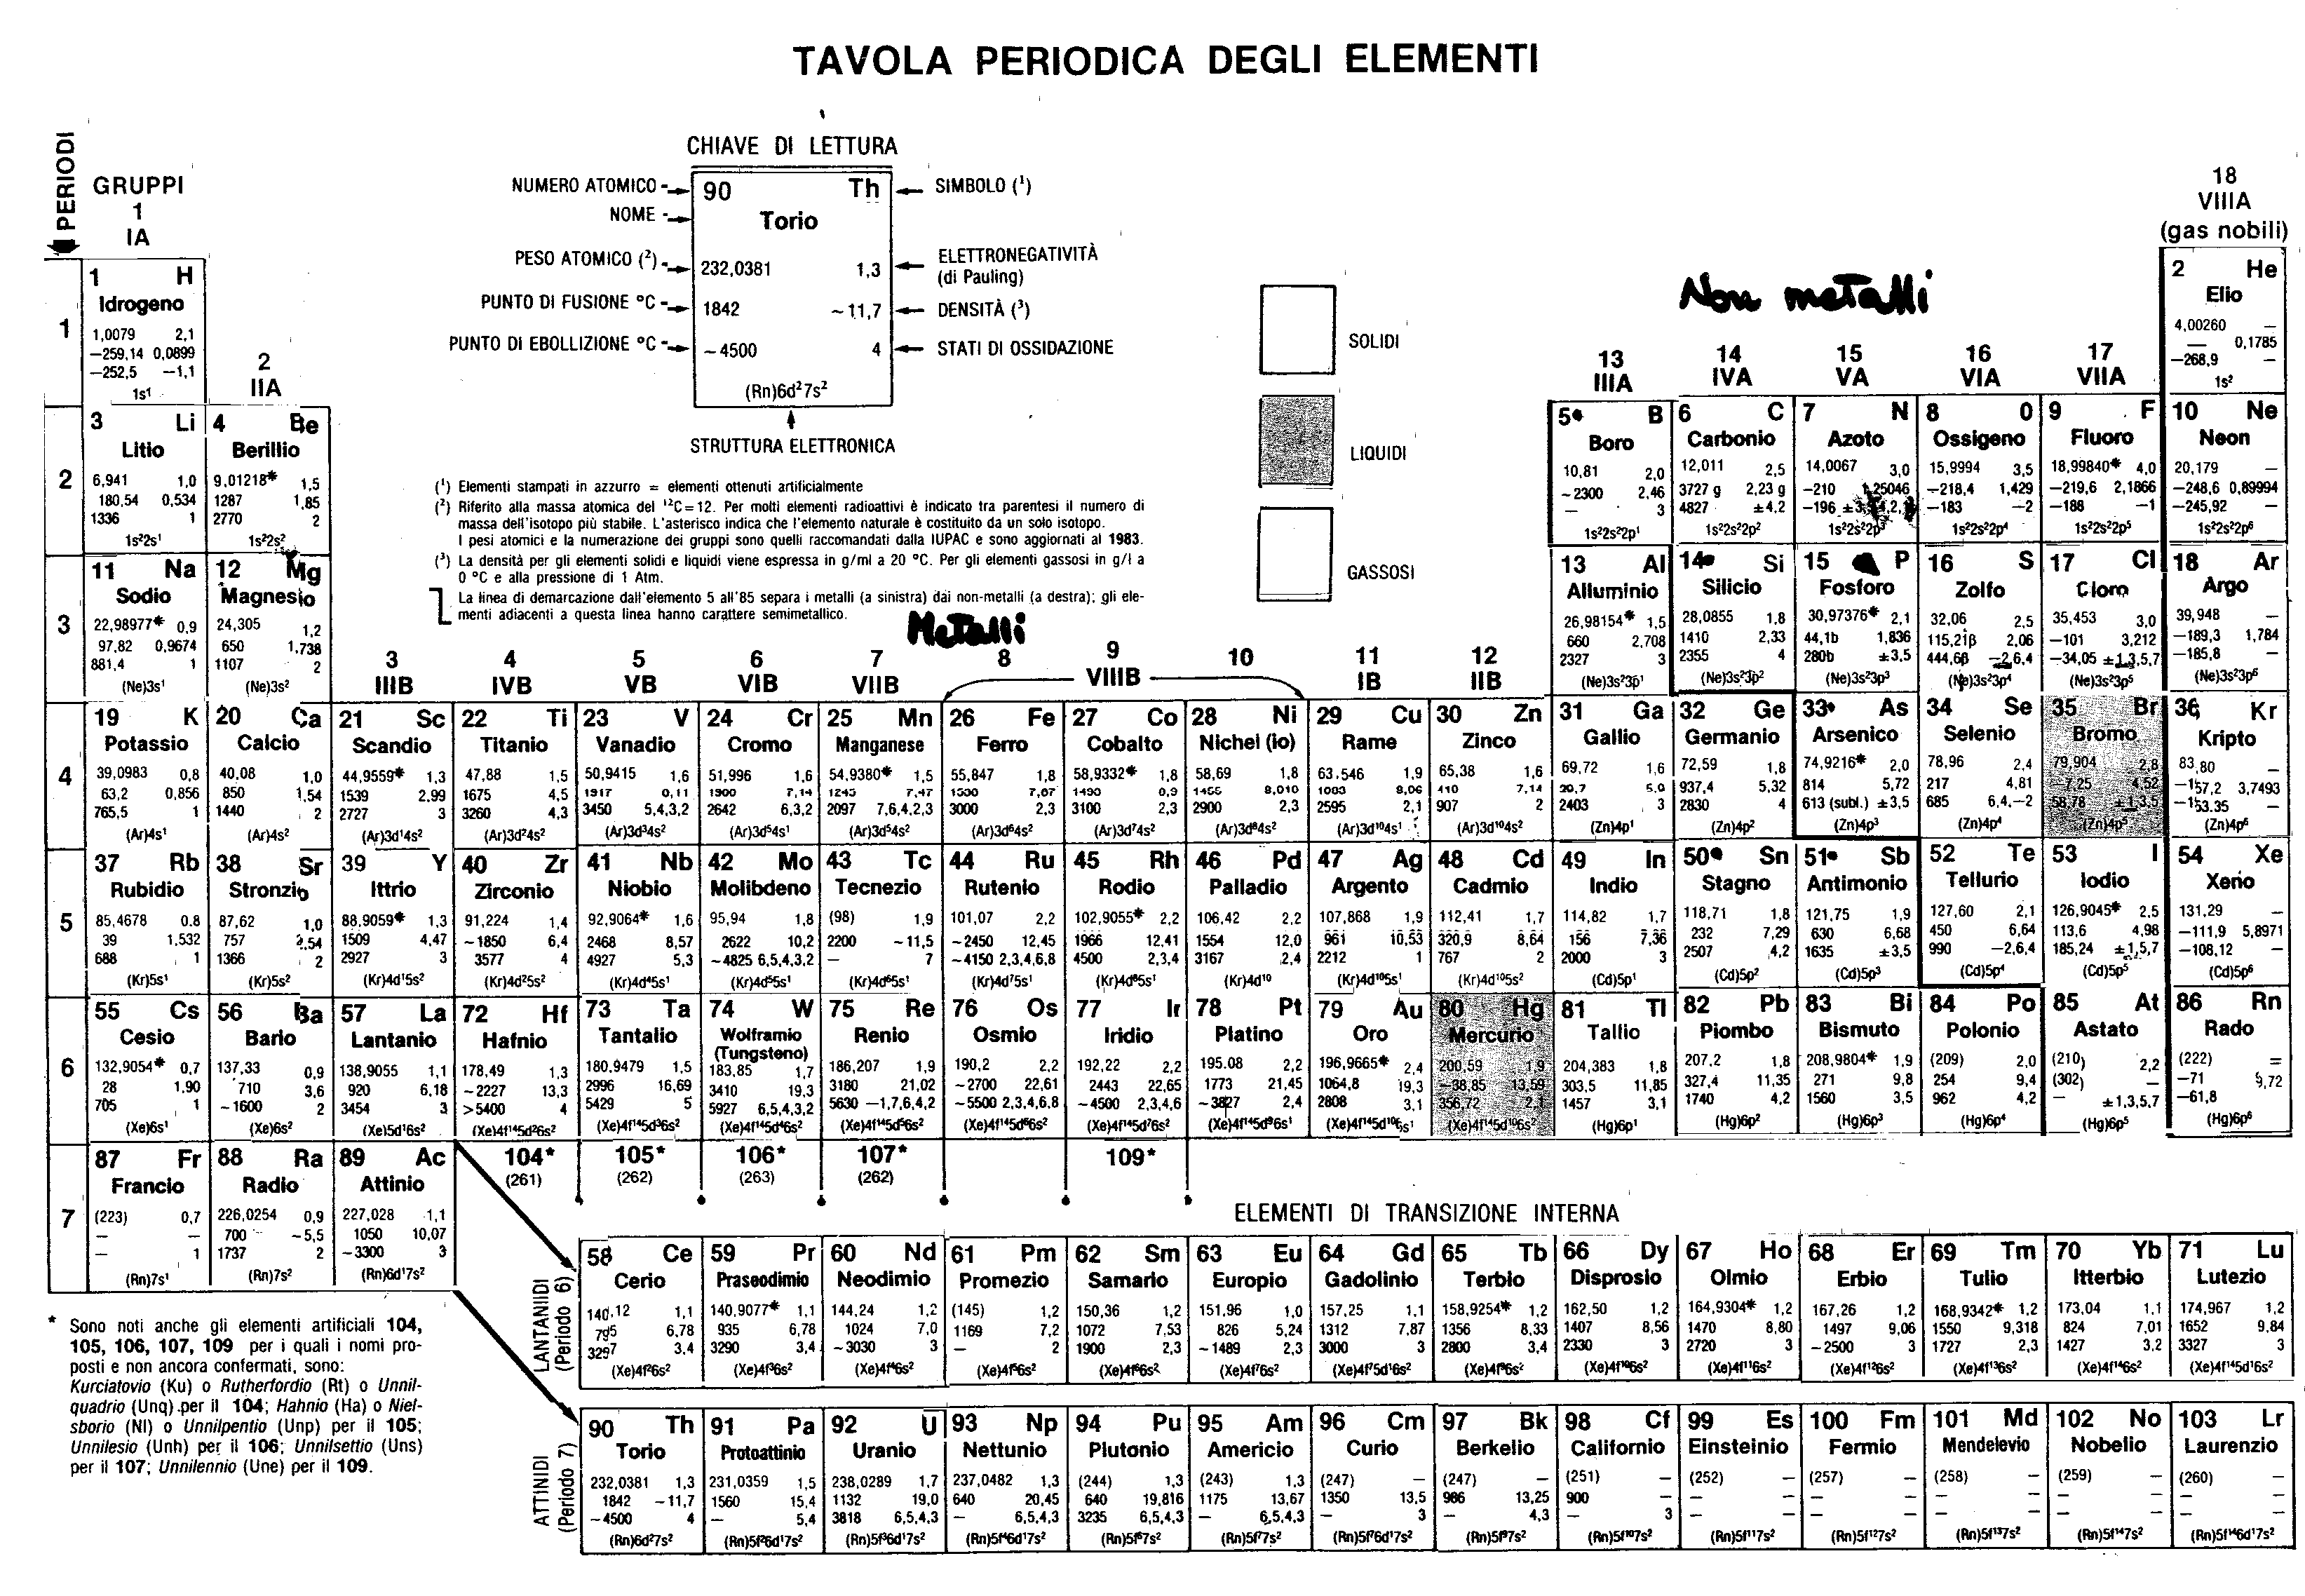 La tavola periodica degli elementi - Test di verifica a risposta